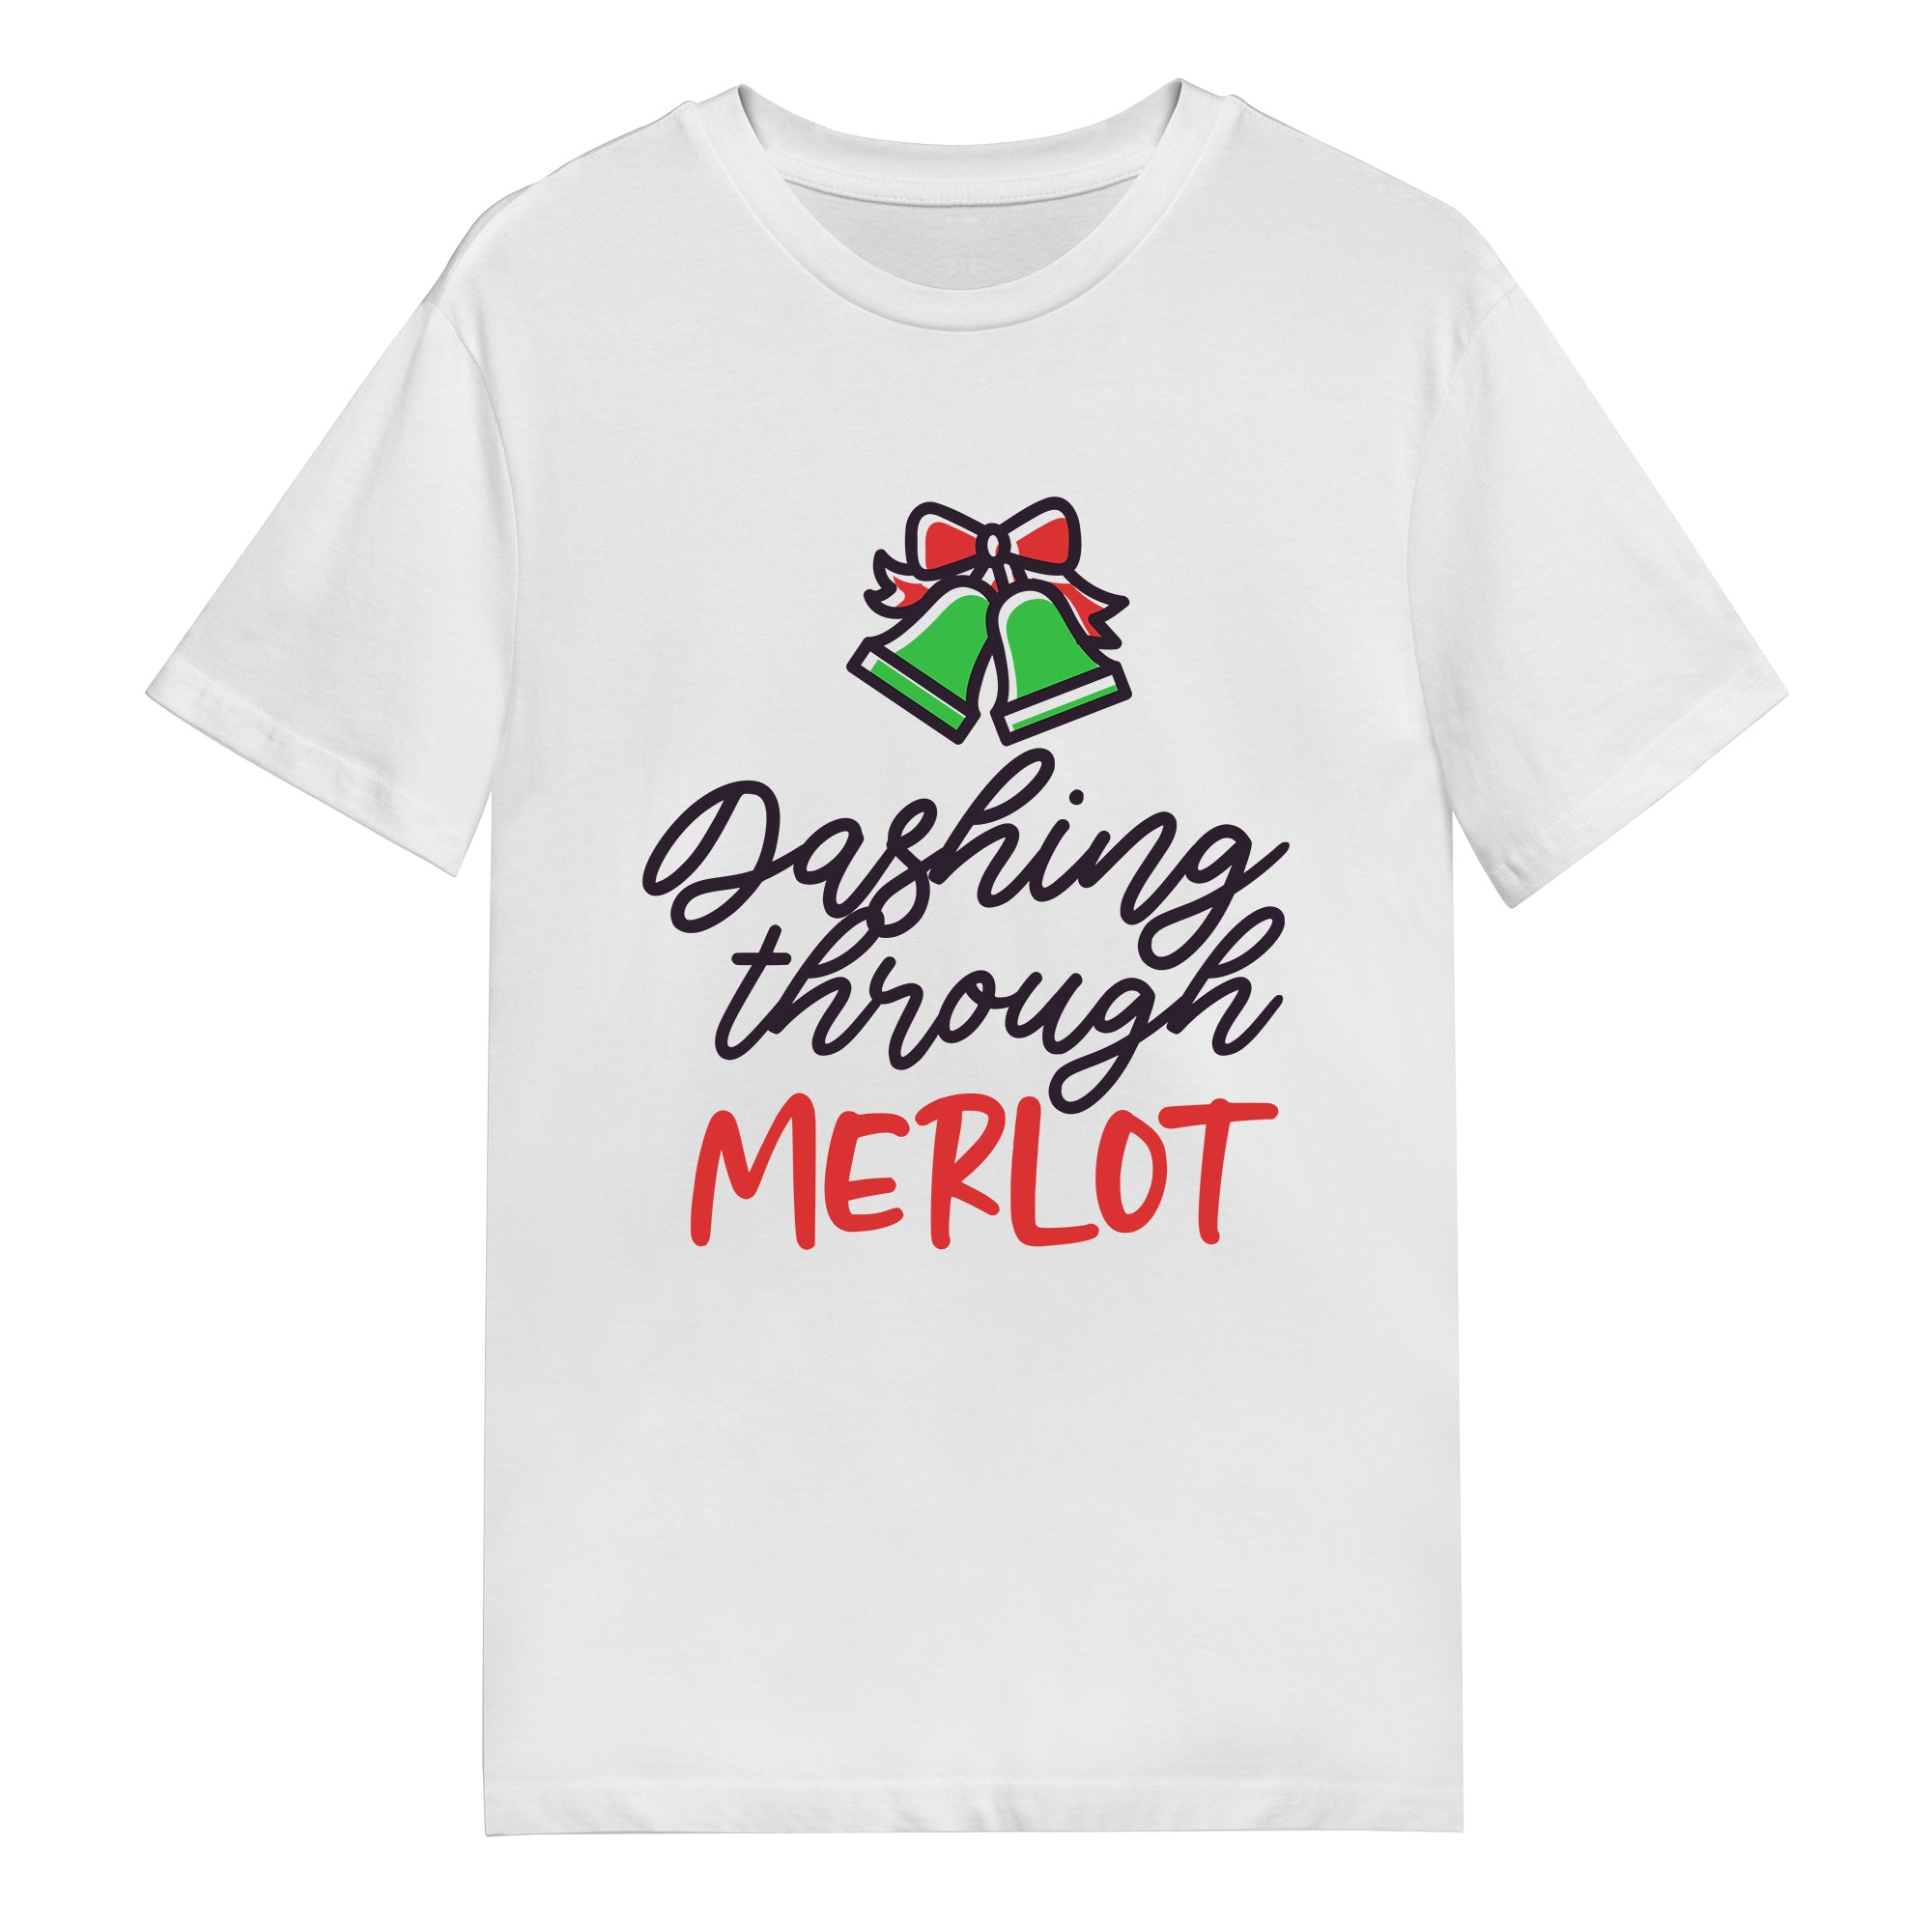 Men's T-Shirt - Dashing Through Merlot